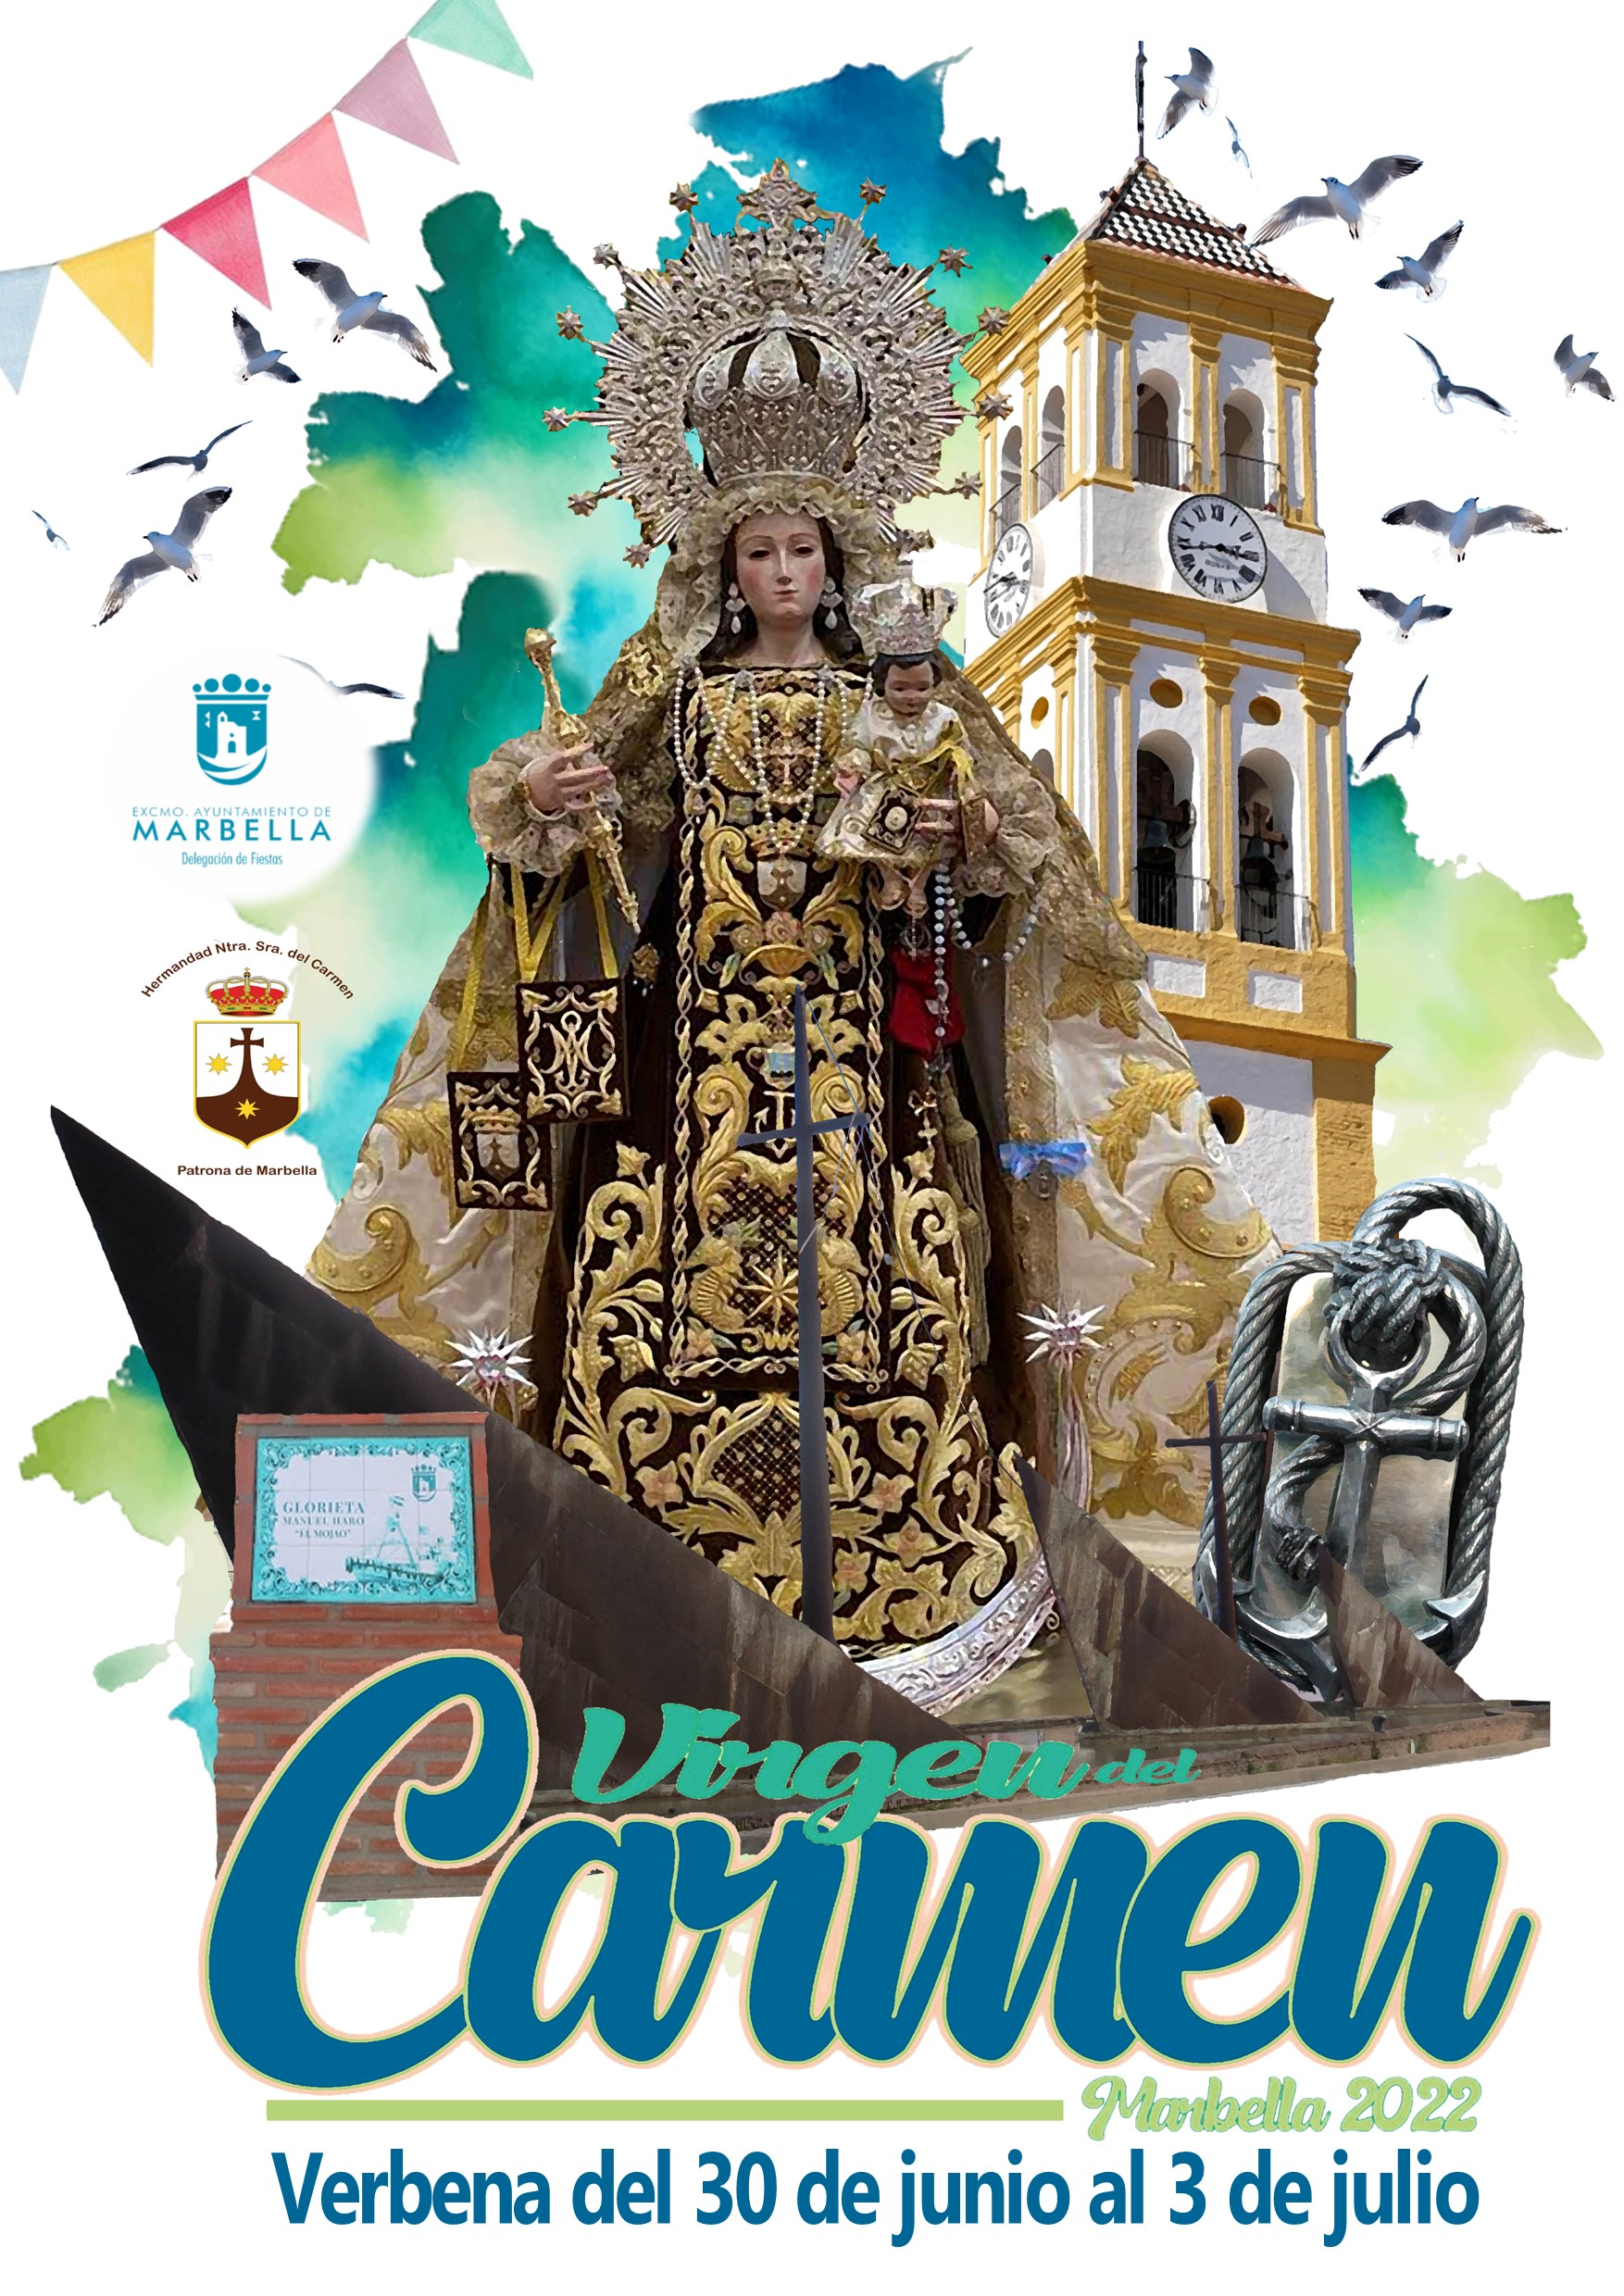 El Boulevard Pablo Ráez será escenario del 30 de junio al 3 de julio de la V Verbena Popular en honor a la Virgen del Carmen, que se retoma “con enorme ilusión” tras la pandemia